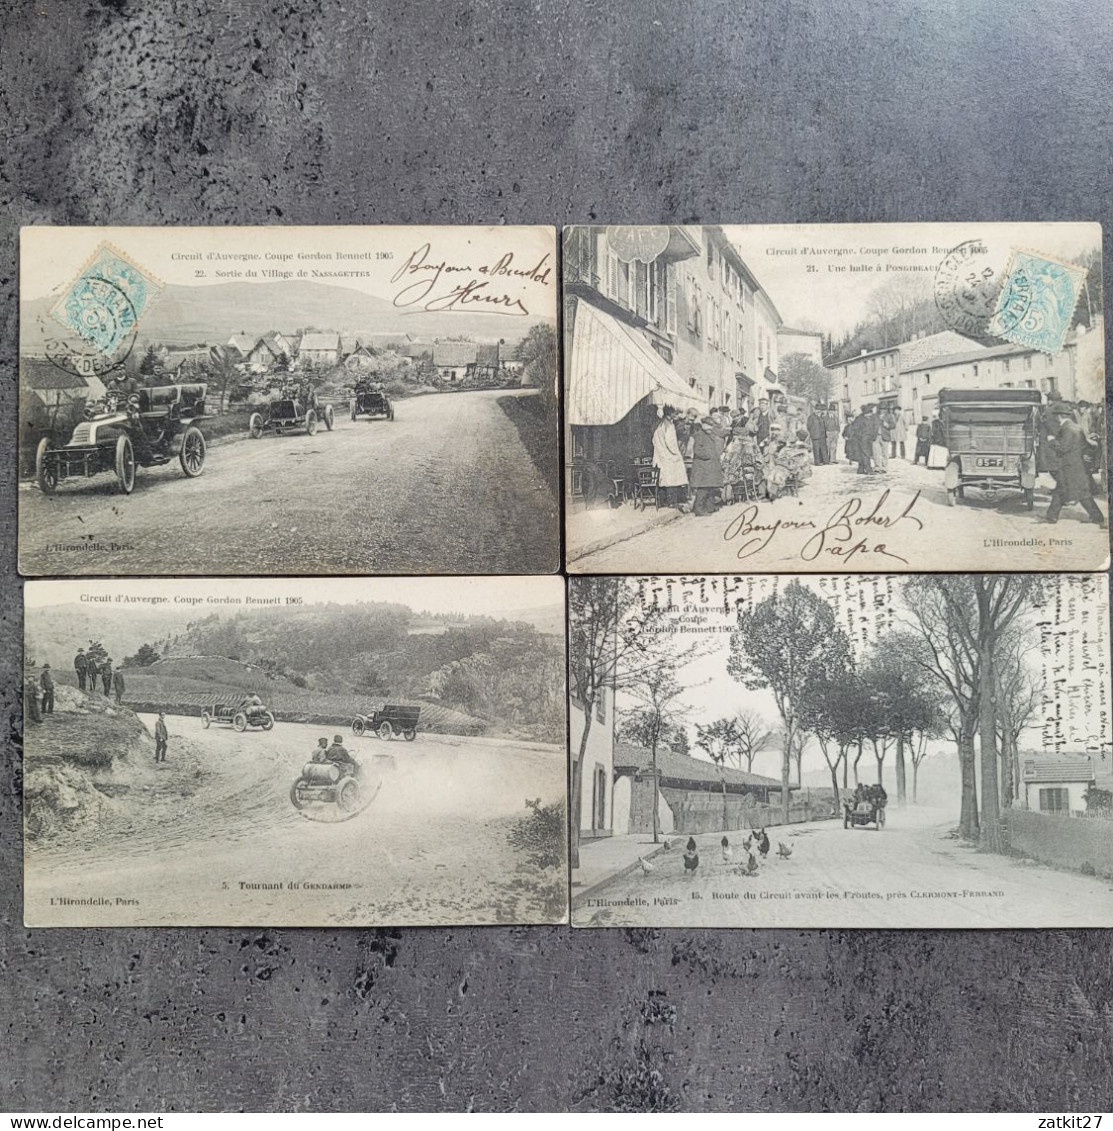 cartes postales, coupe Gordon Bennett 1905, course automobile